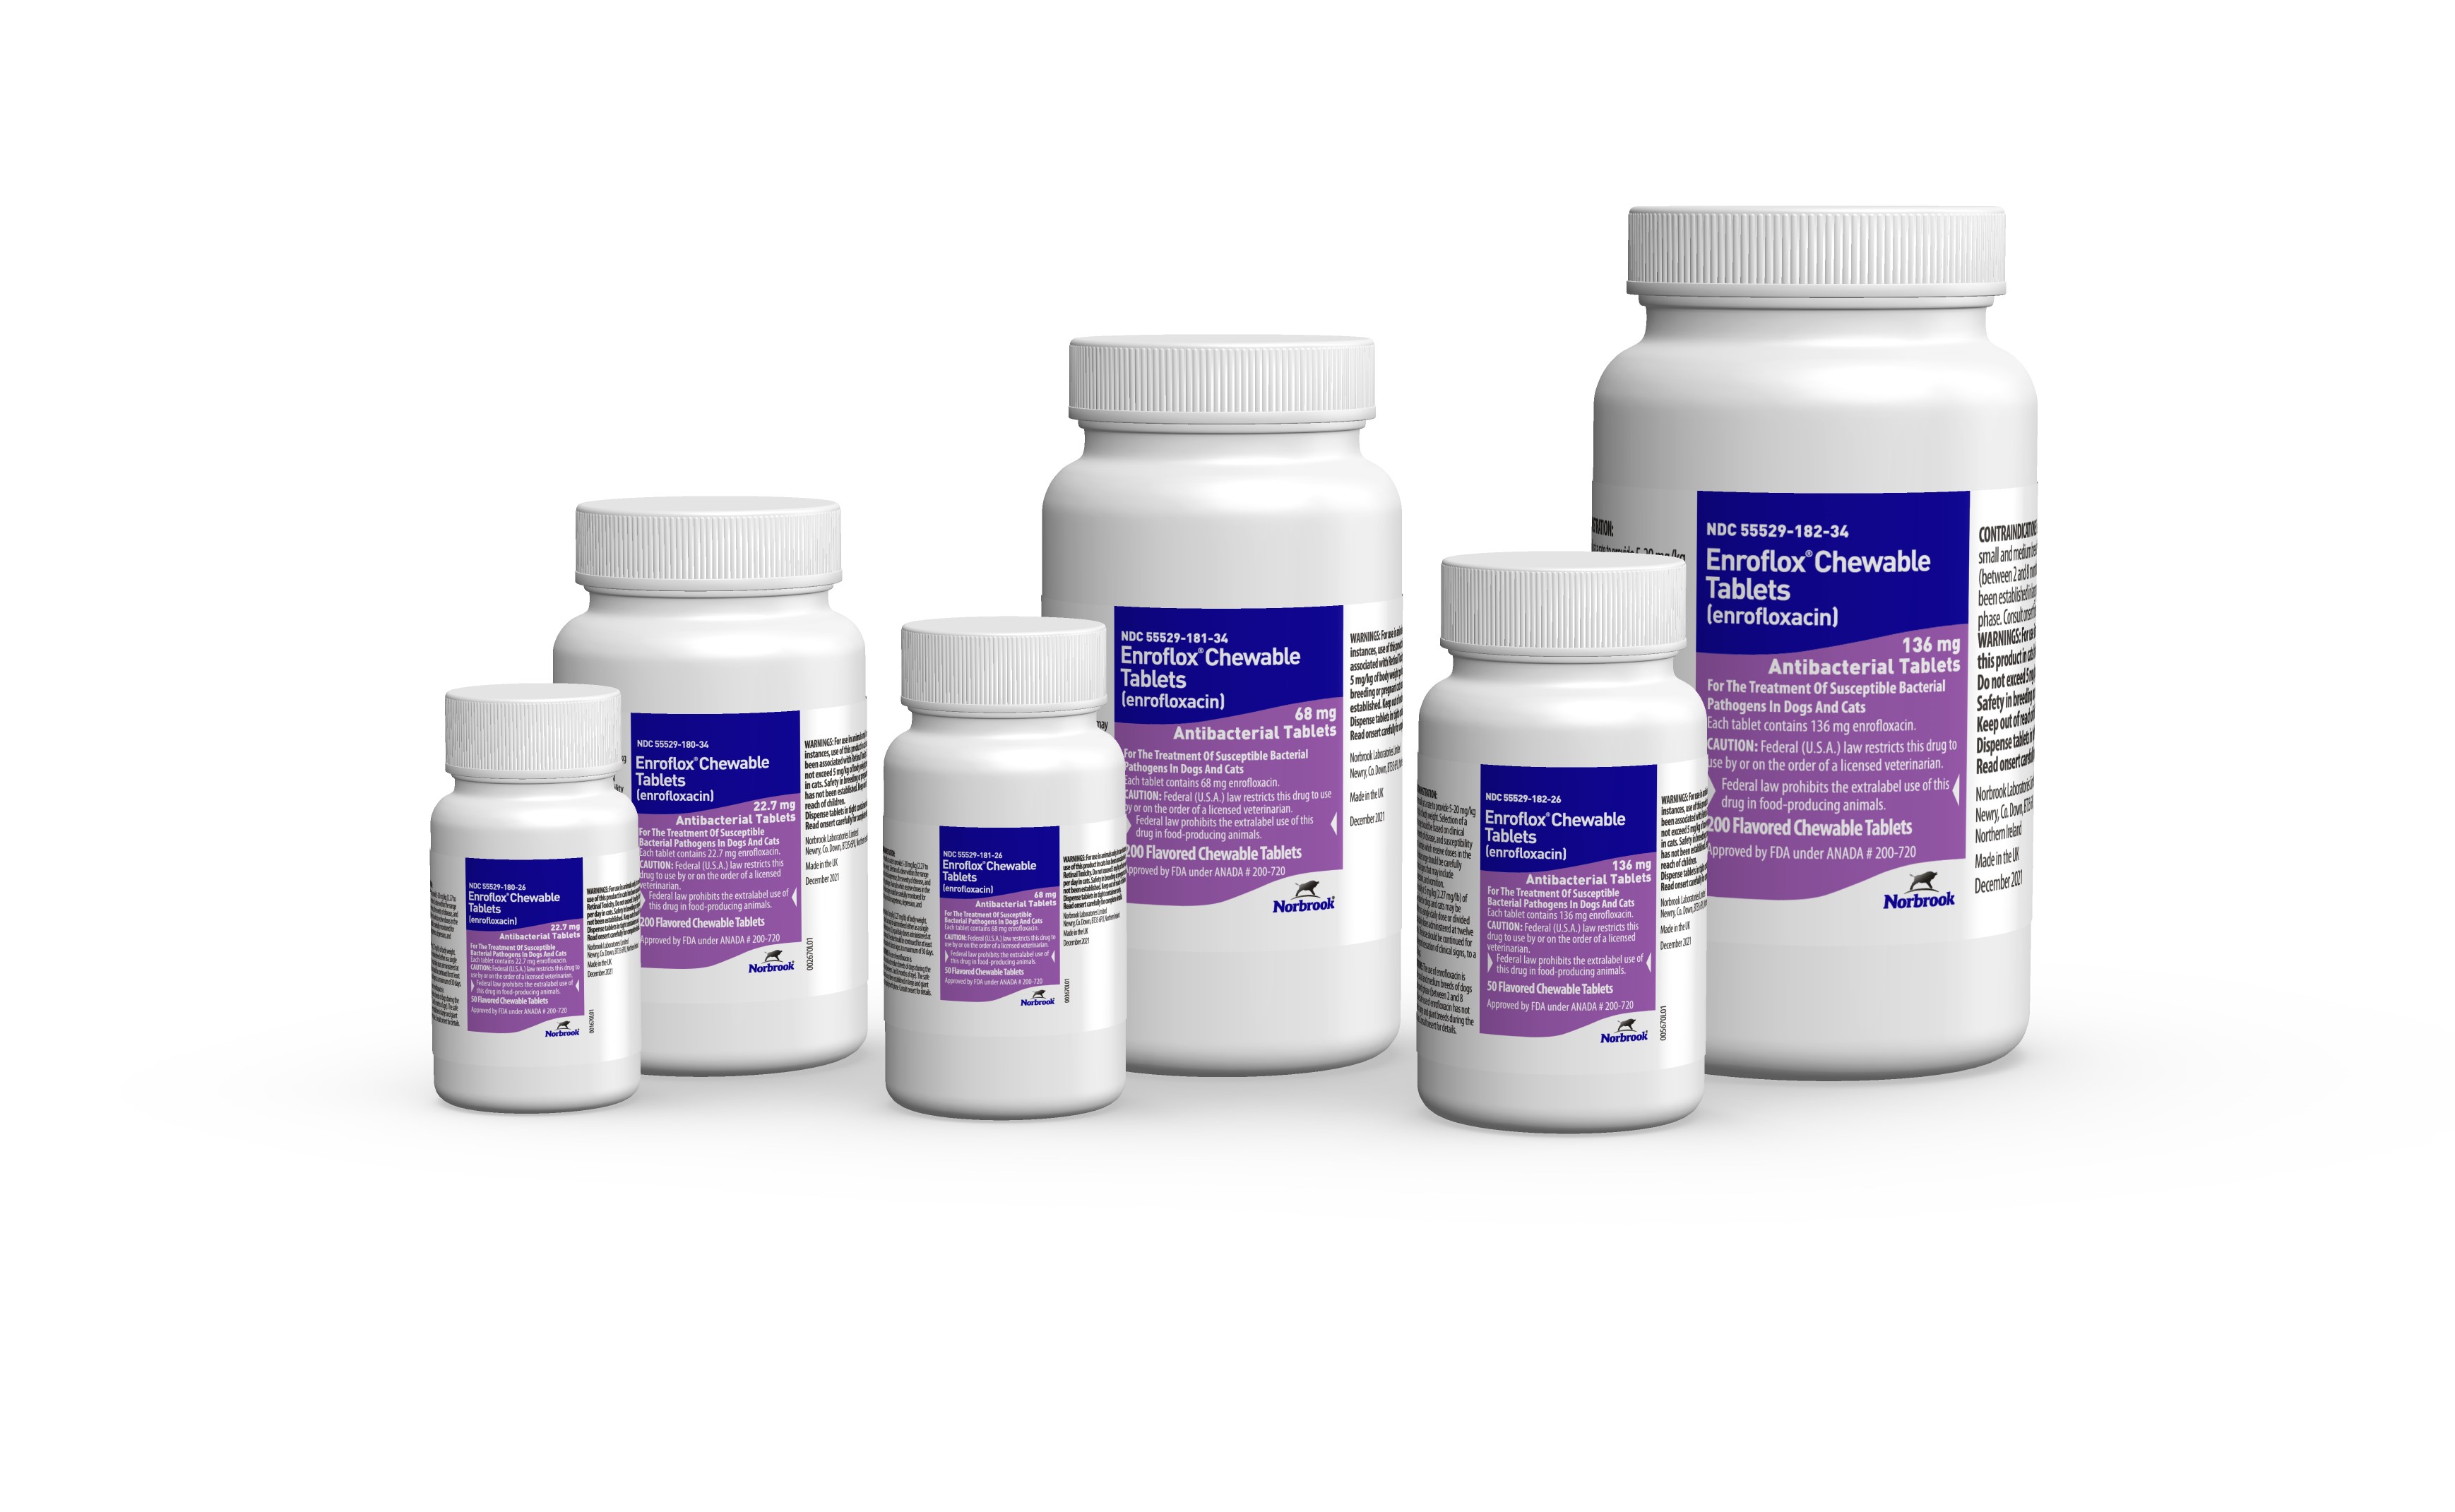 Enroflox® (enrofloxacin) Chewable Tablets